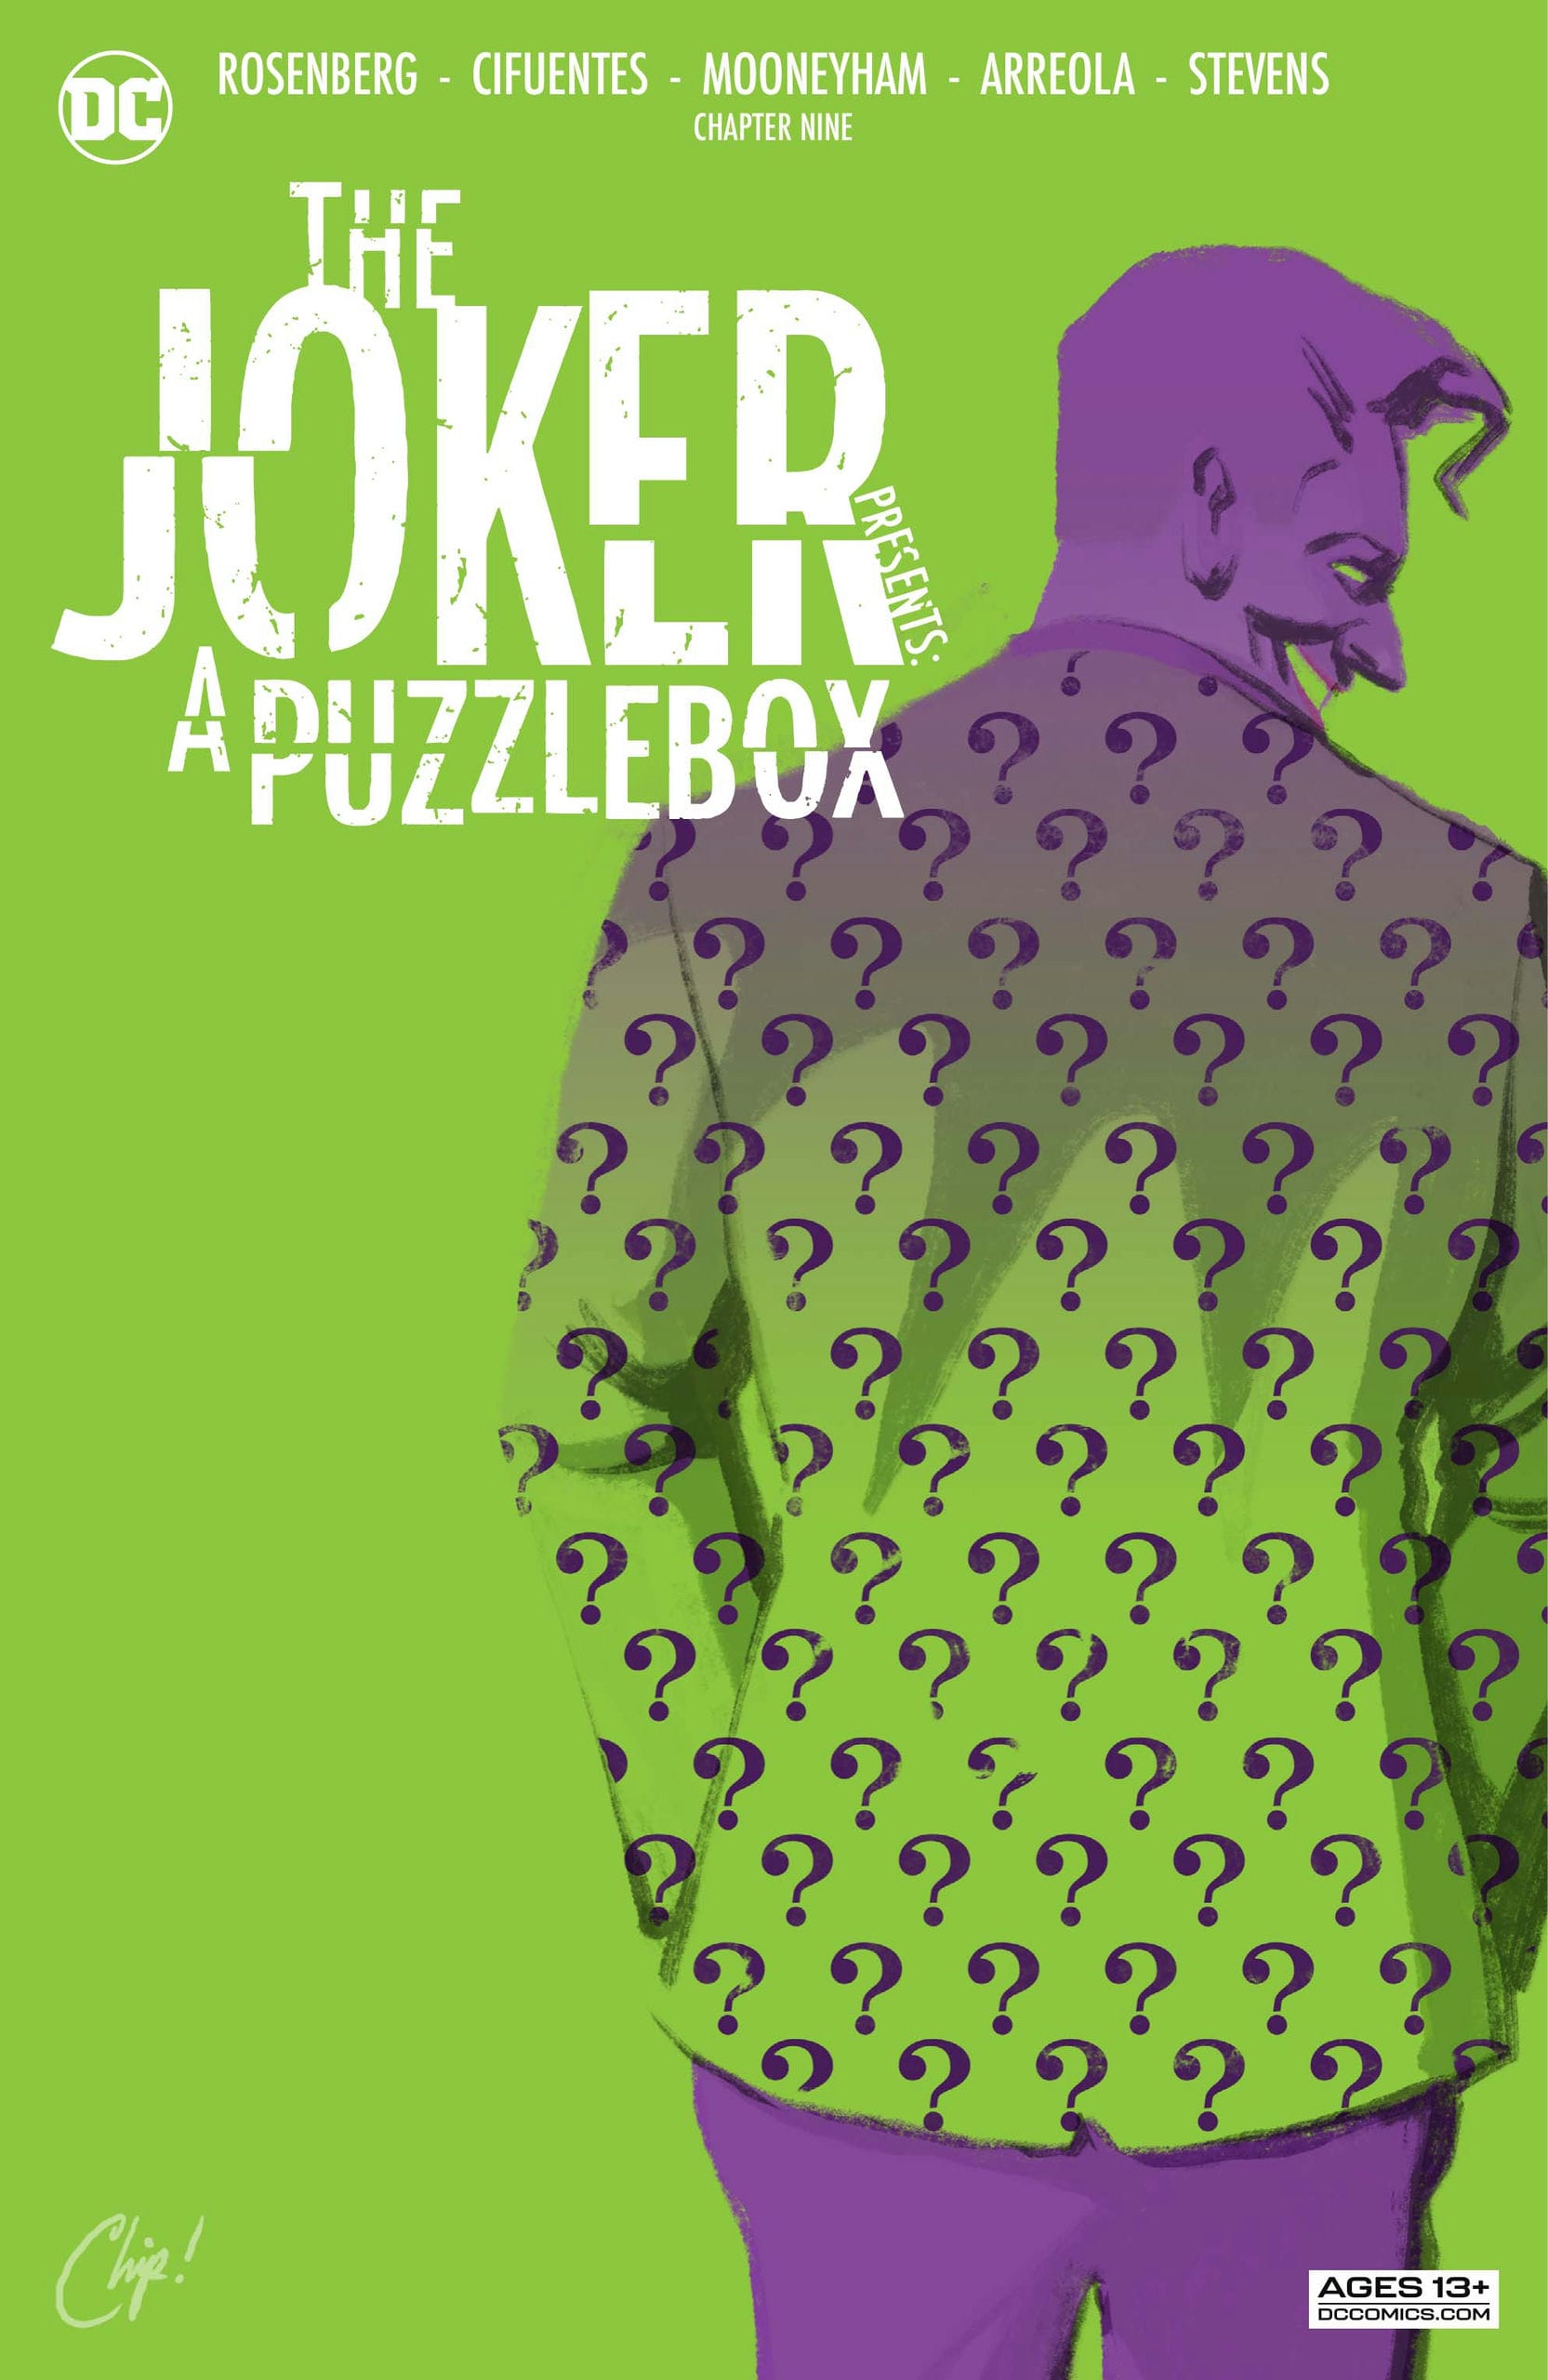 https://langgeek.net/wp-content/webpc-passthru.php?src=https://langgeek.net/wp-content/uploads/2023/01/The-Joker-Presents-A-Puzzlebox-Director_s-Cut-009-000.jpg&nocache=1